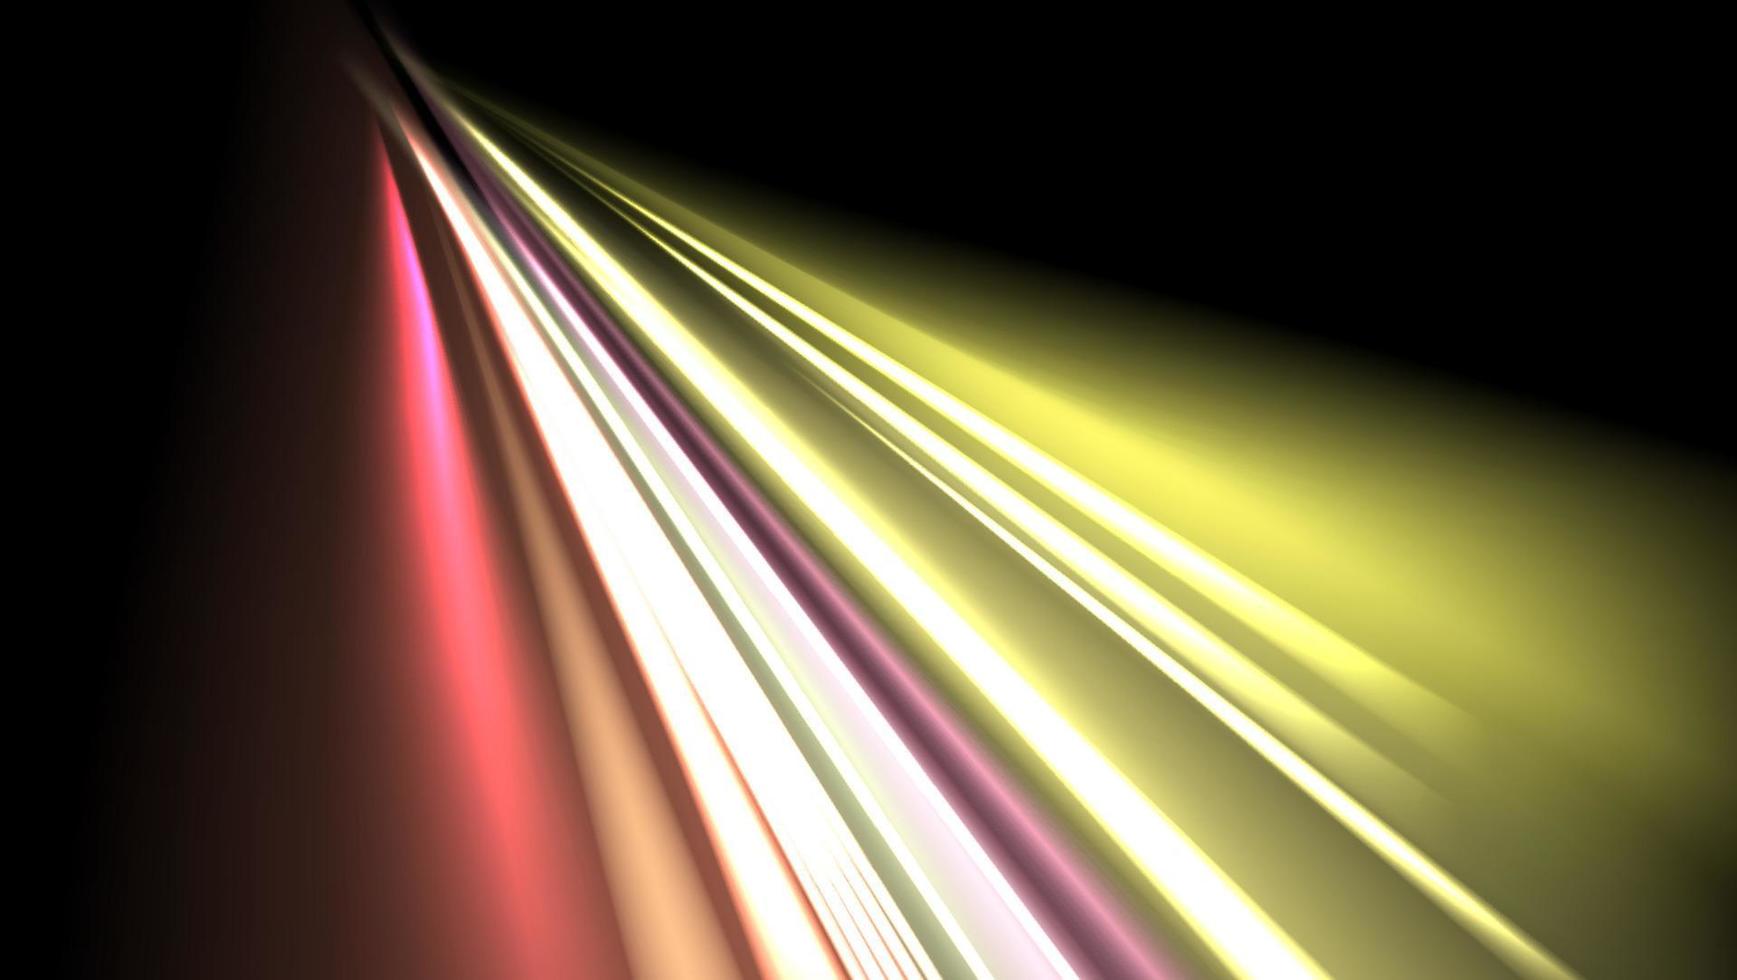 immagine vettoriale di scie luminose colorate con effetto motion blur, esposizione a lungo termine. isolato sullo sfondo